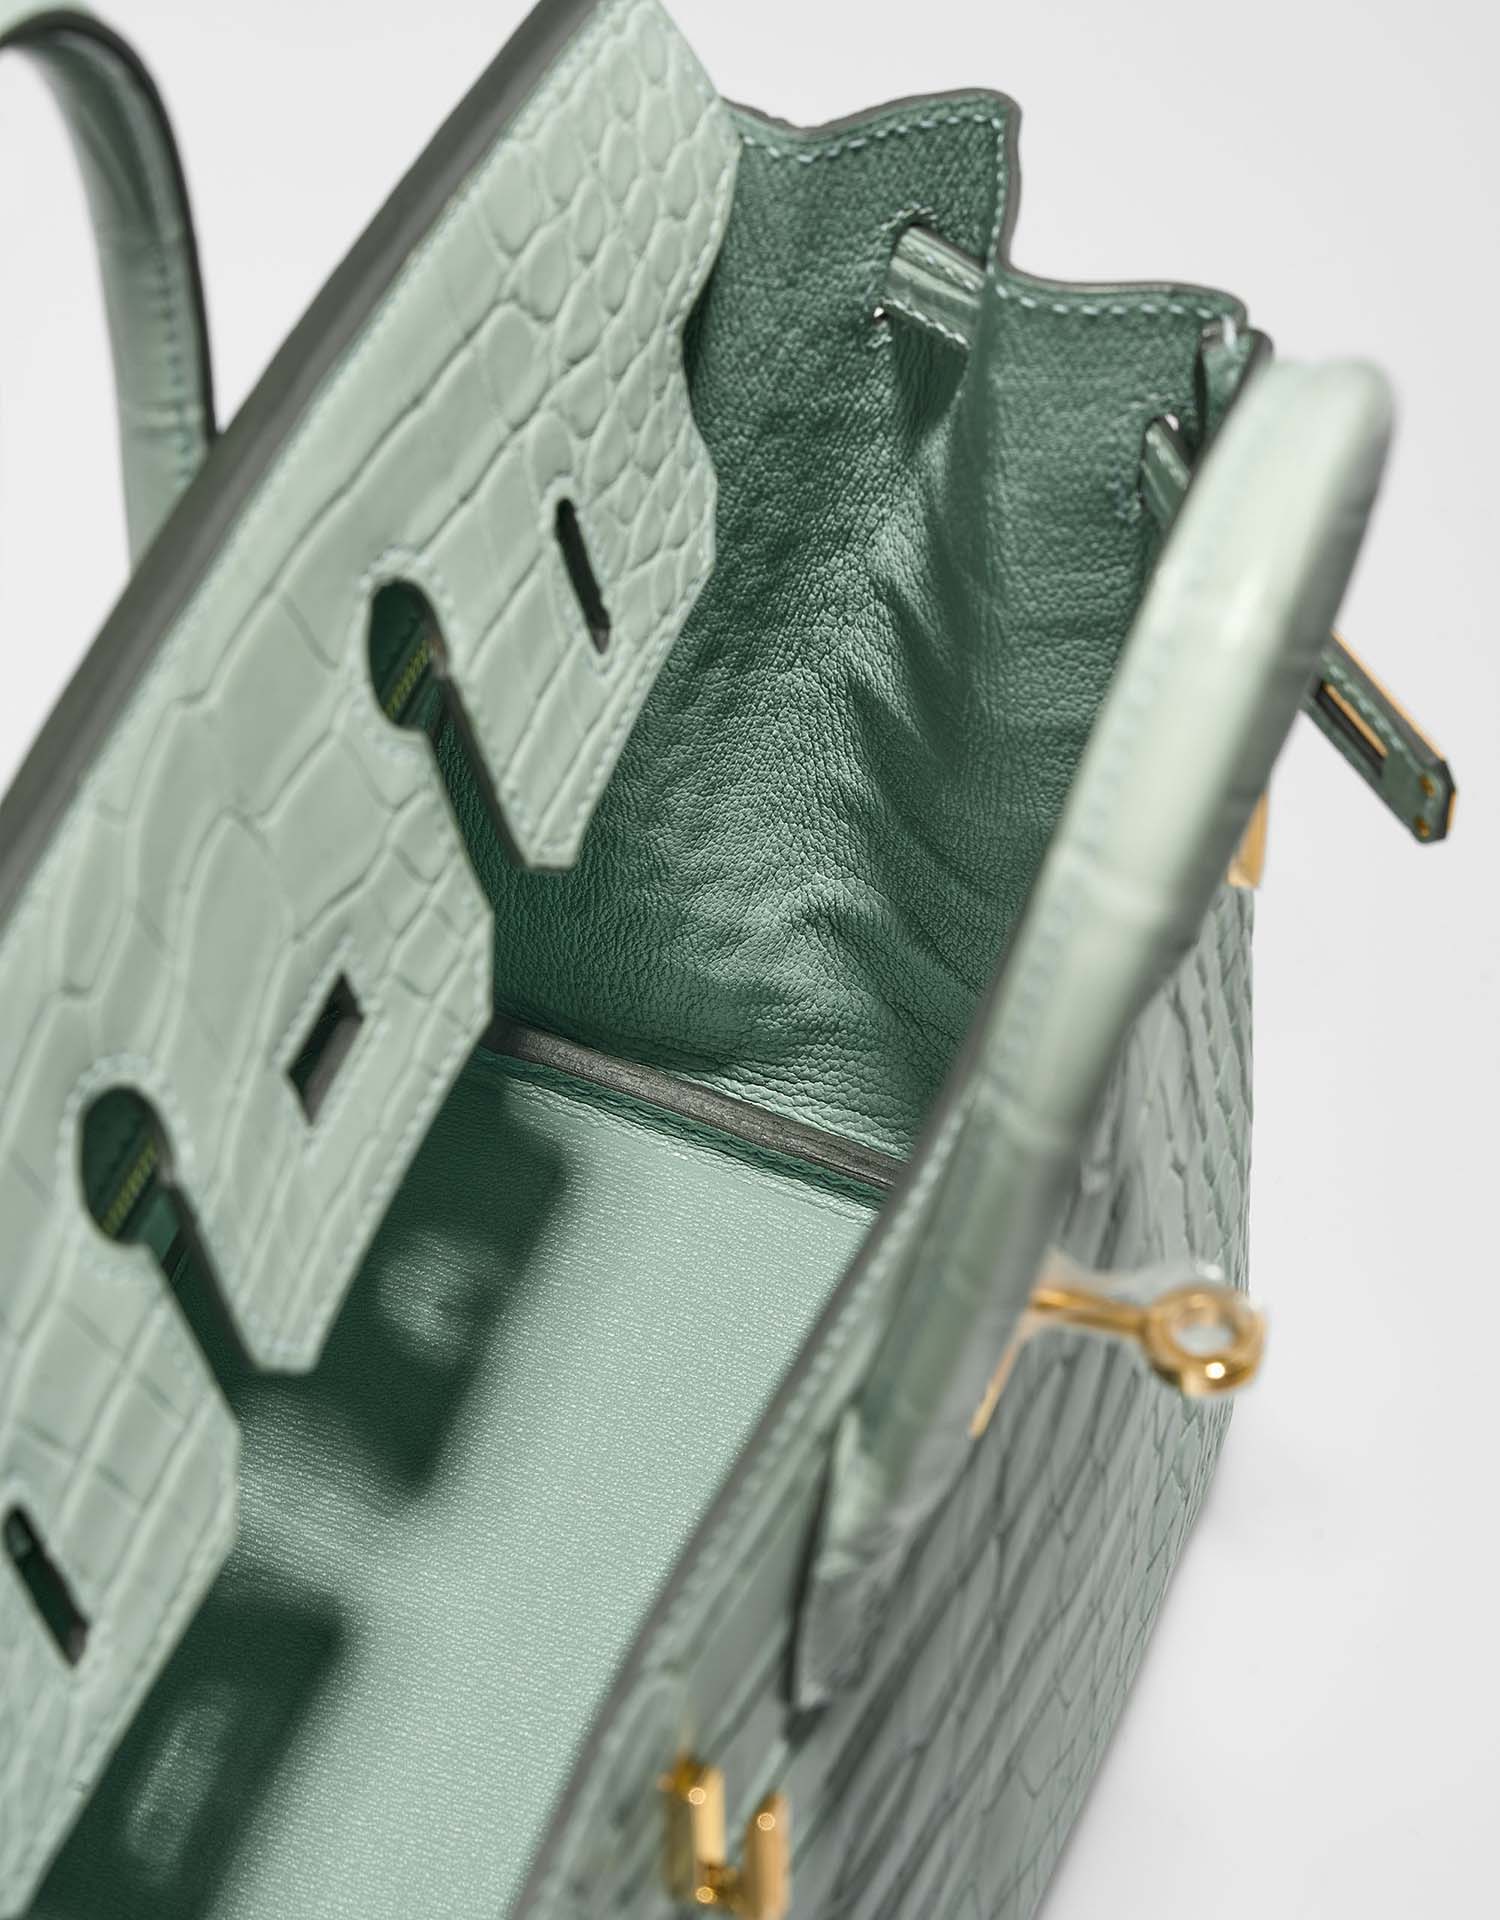 Hermès Birkin 25 VertD&#039;Eau Inside | Verkaufen Sie Ihre Designertasche auf Saclab.com